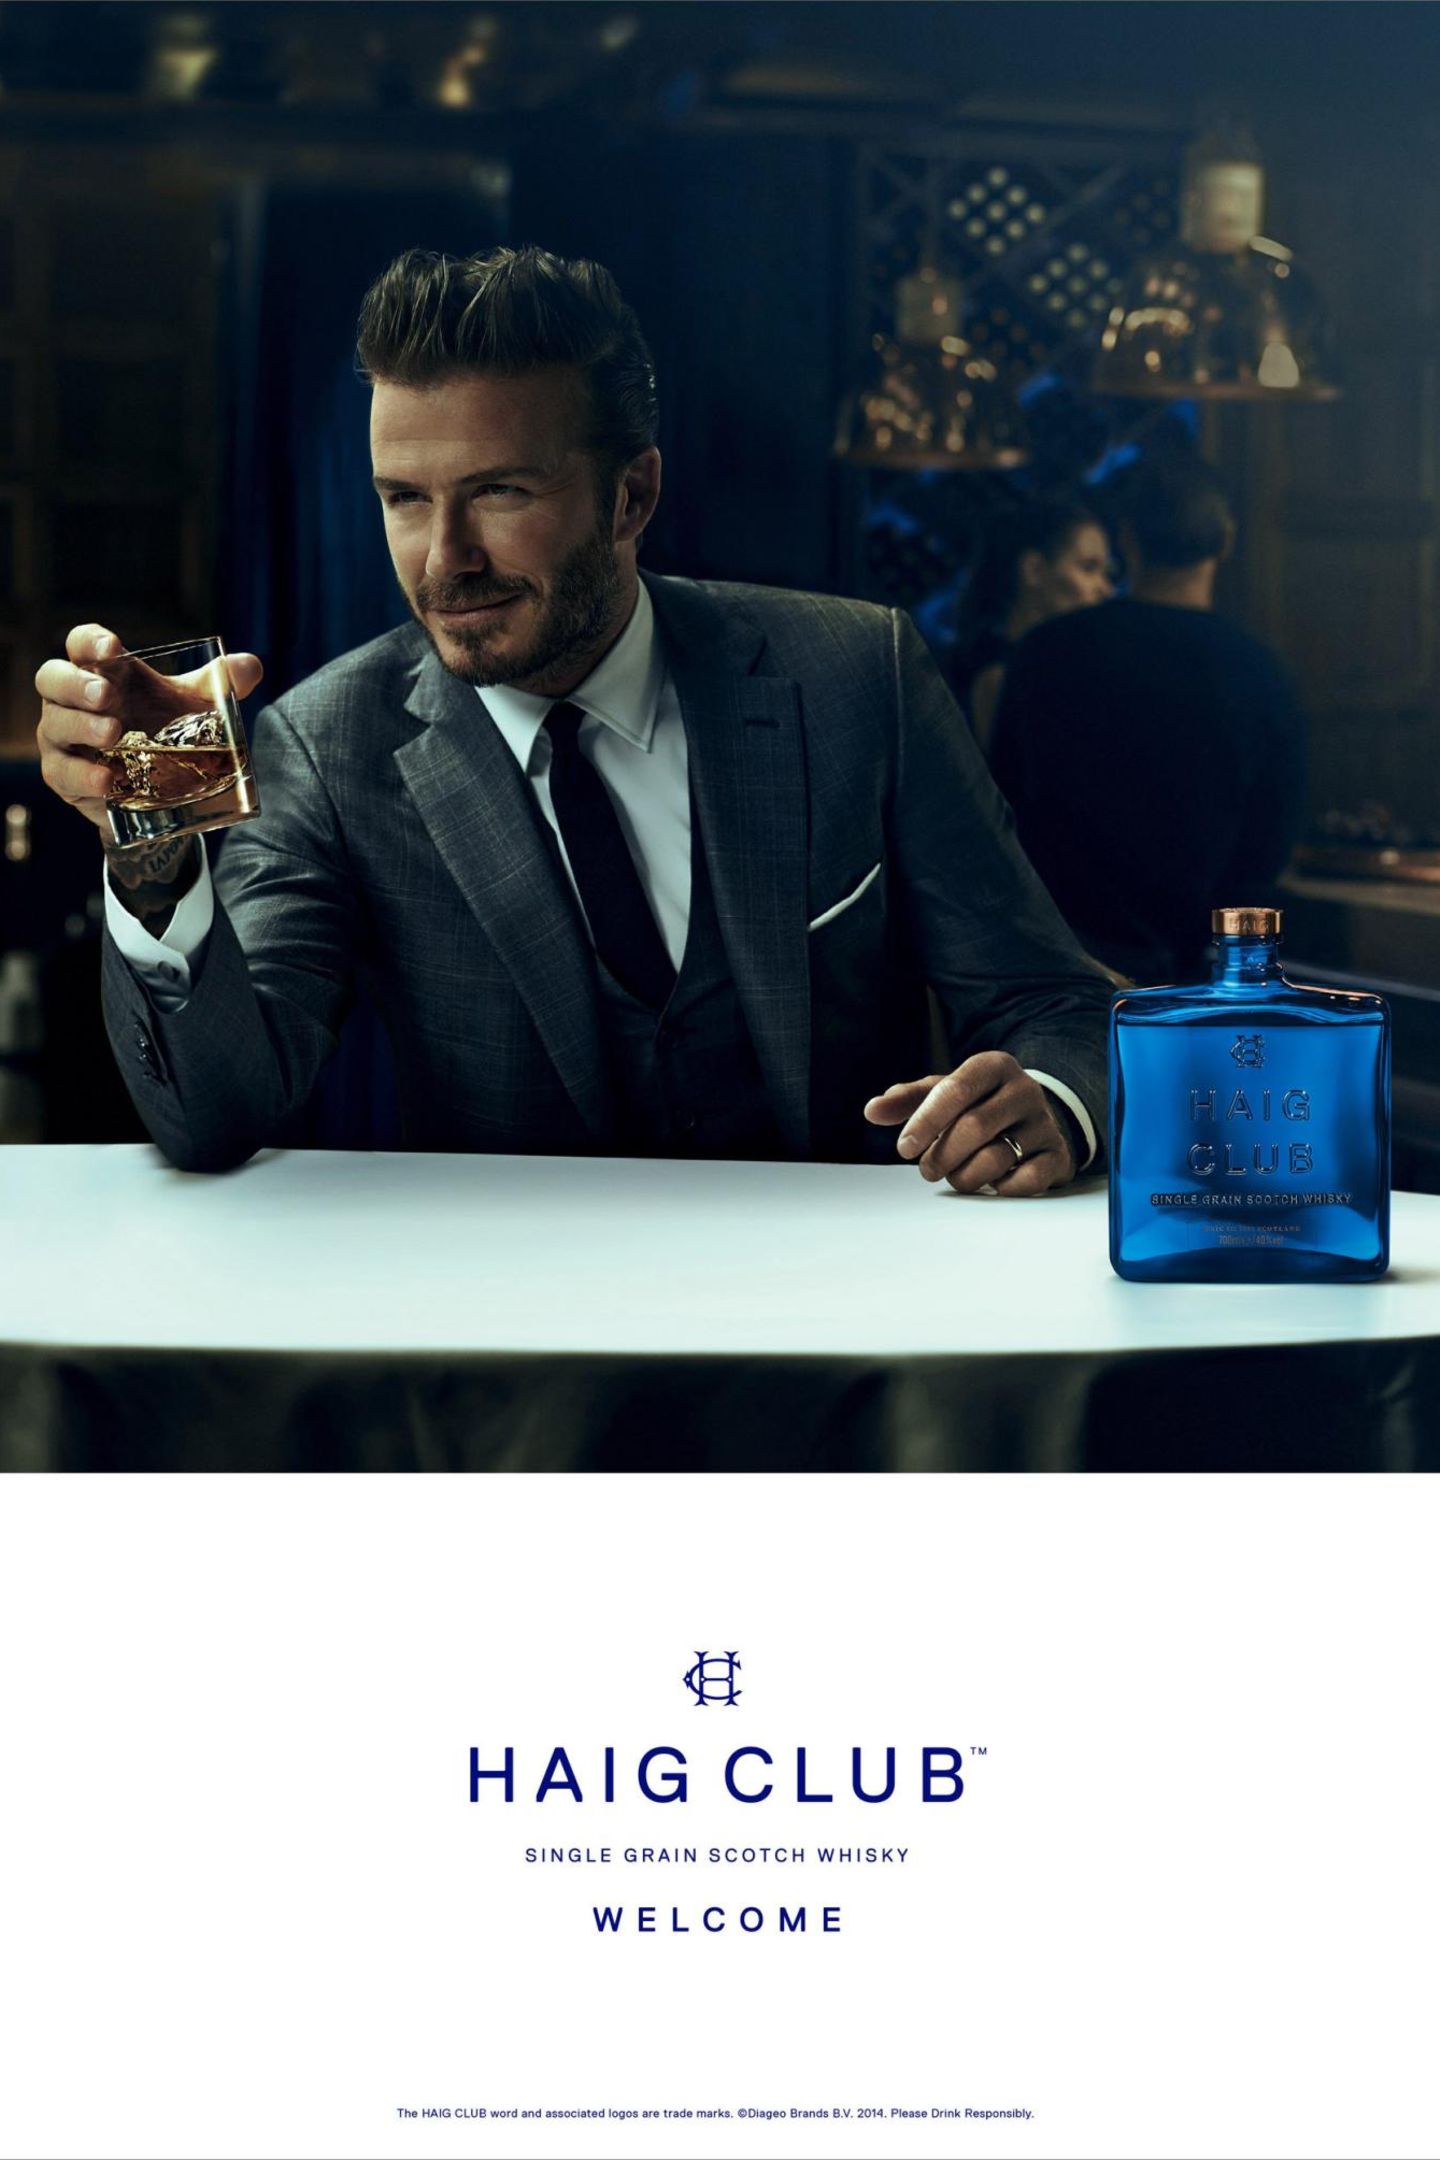 David Beckham geht unter die Whiskytrinker. Zusammen mit einem britischen Unternehmer bringt er den Single Grain Scotch Whisky Haig Club auf den Markt.